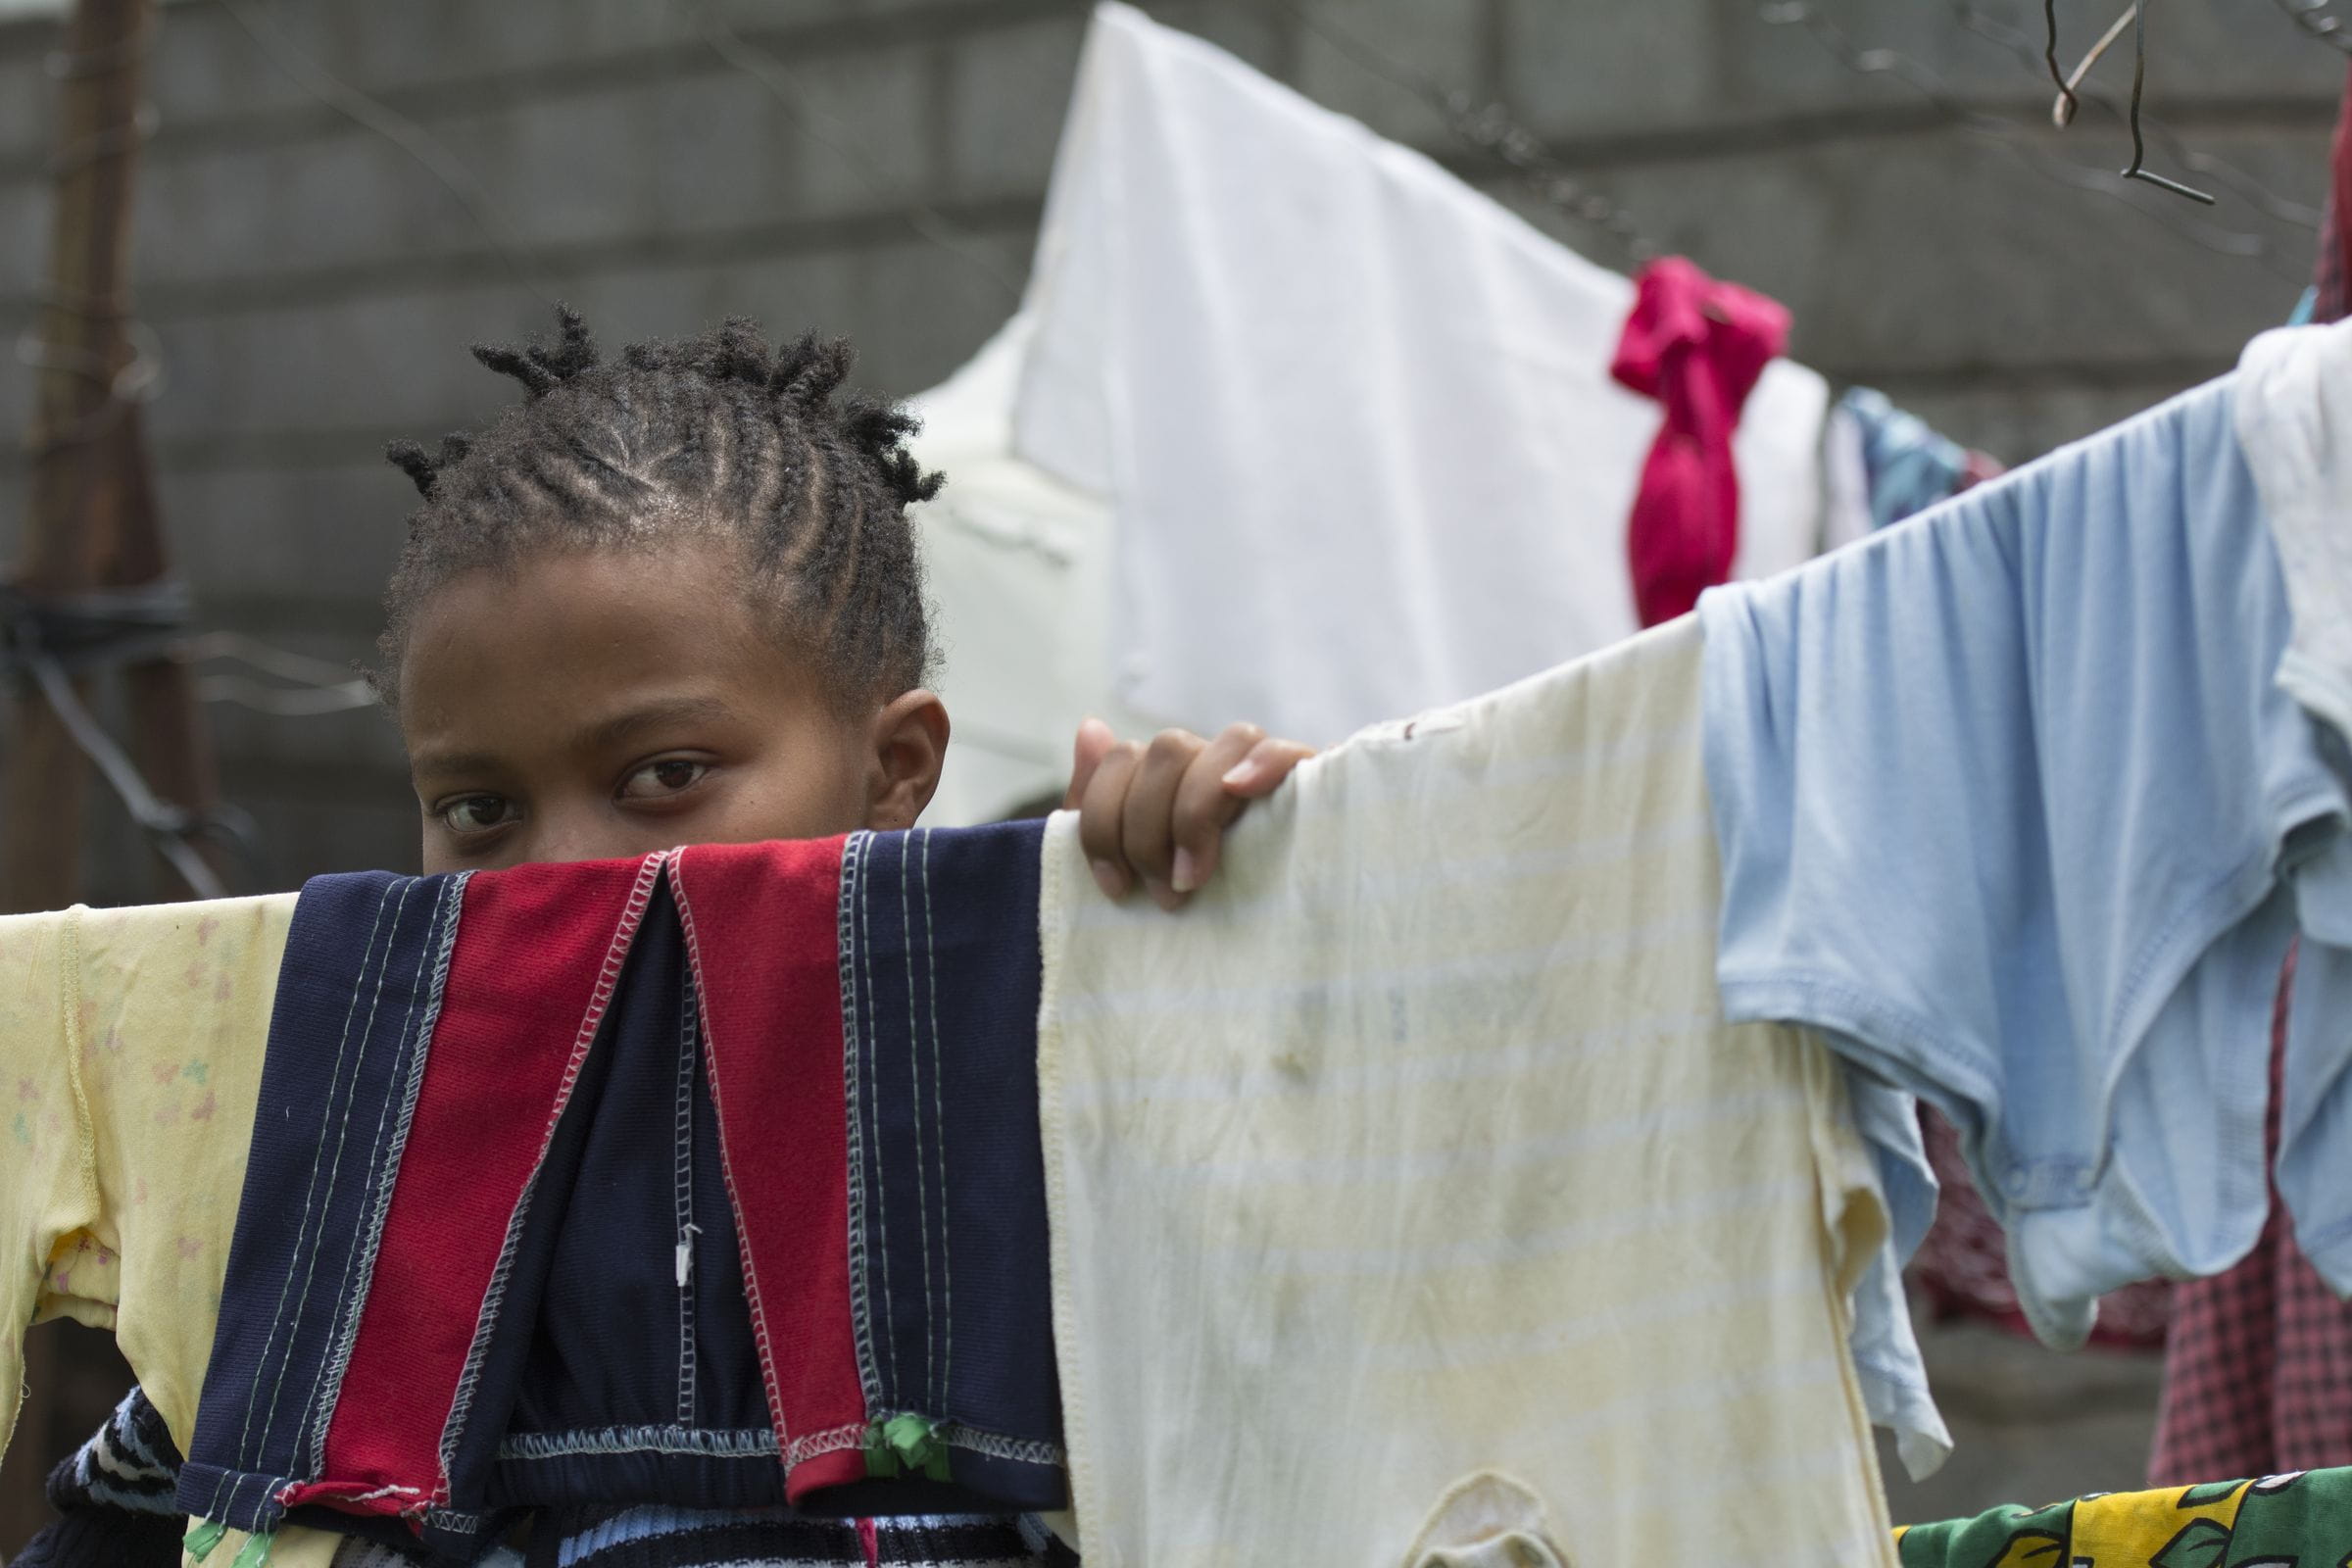 Auf einer Wäscheleine trocknet Wäsche. Diese verdeckt halb das Gesicht eines kenianischen Mädchens. (Quelle: Christian Nusch)